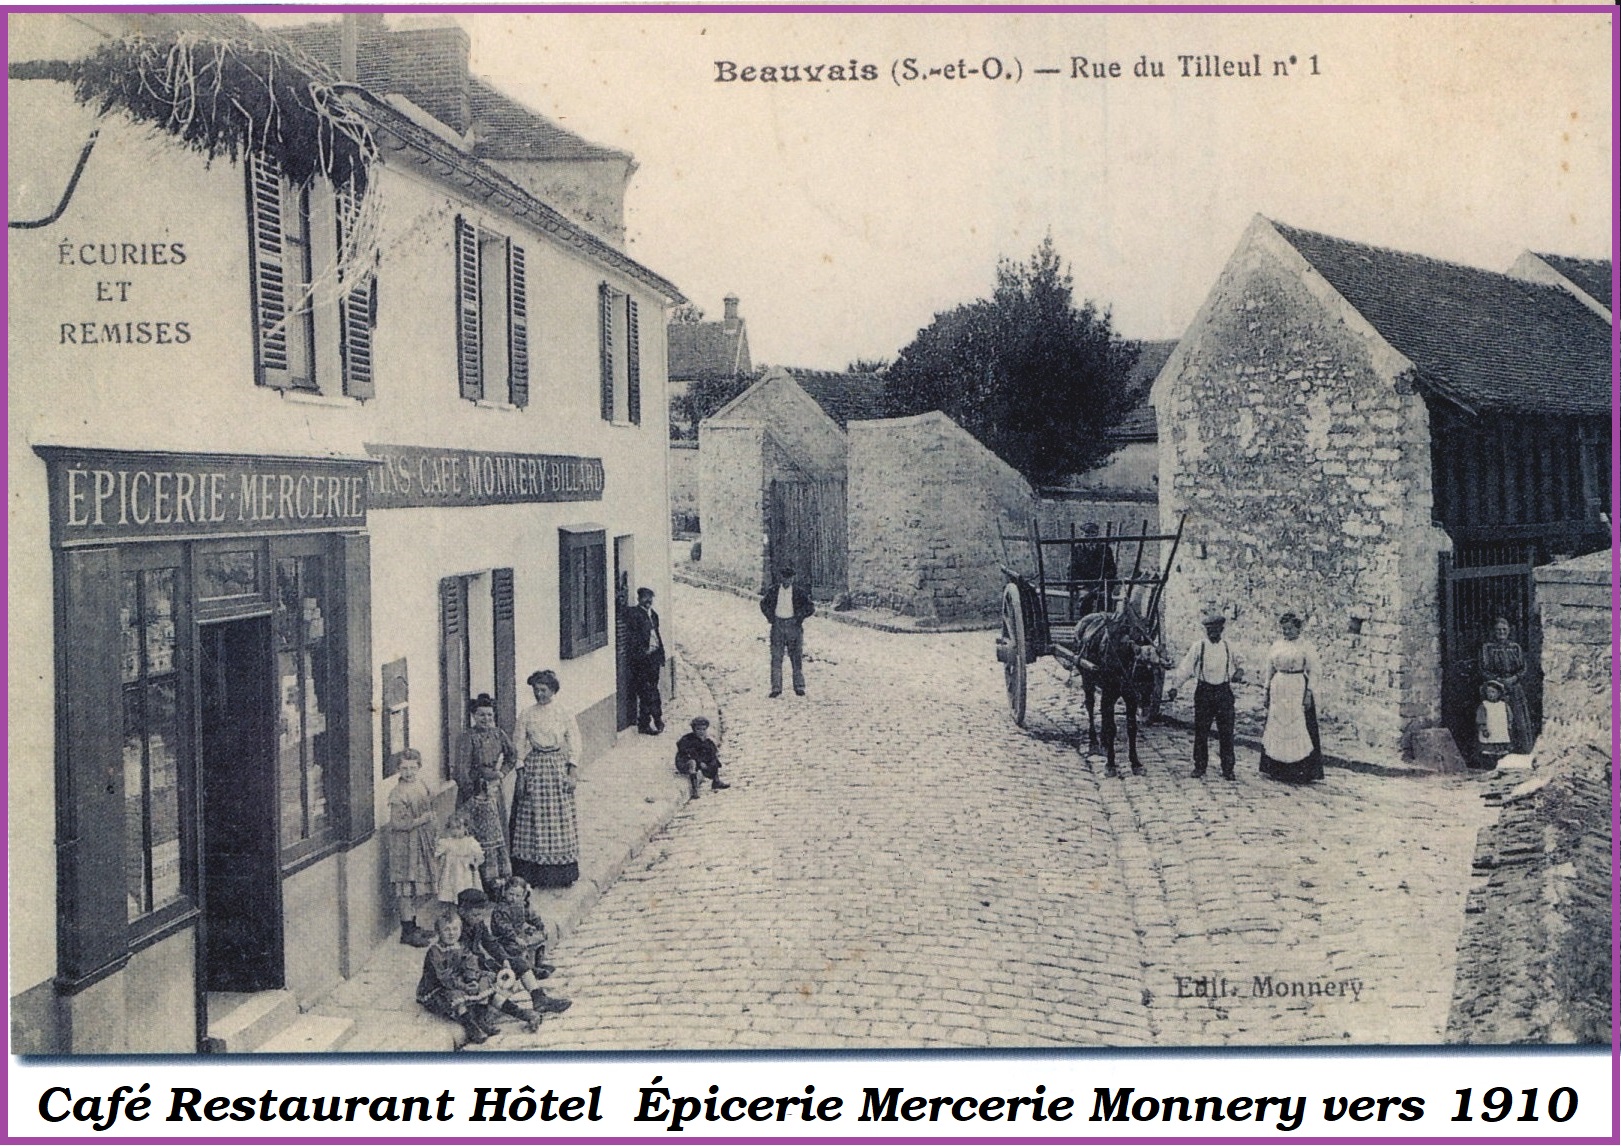 Beauvais monnery